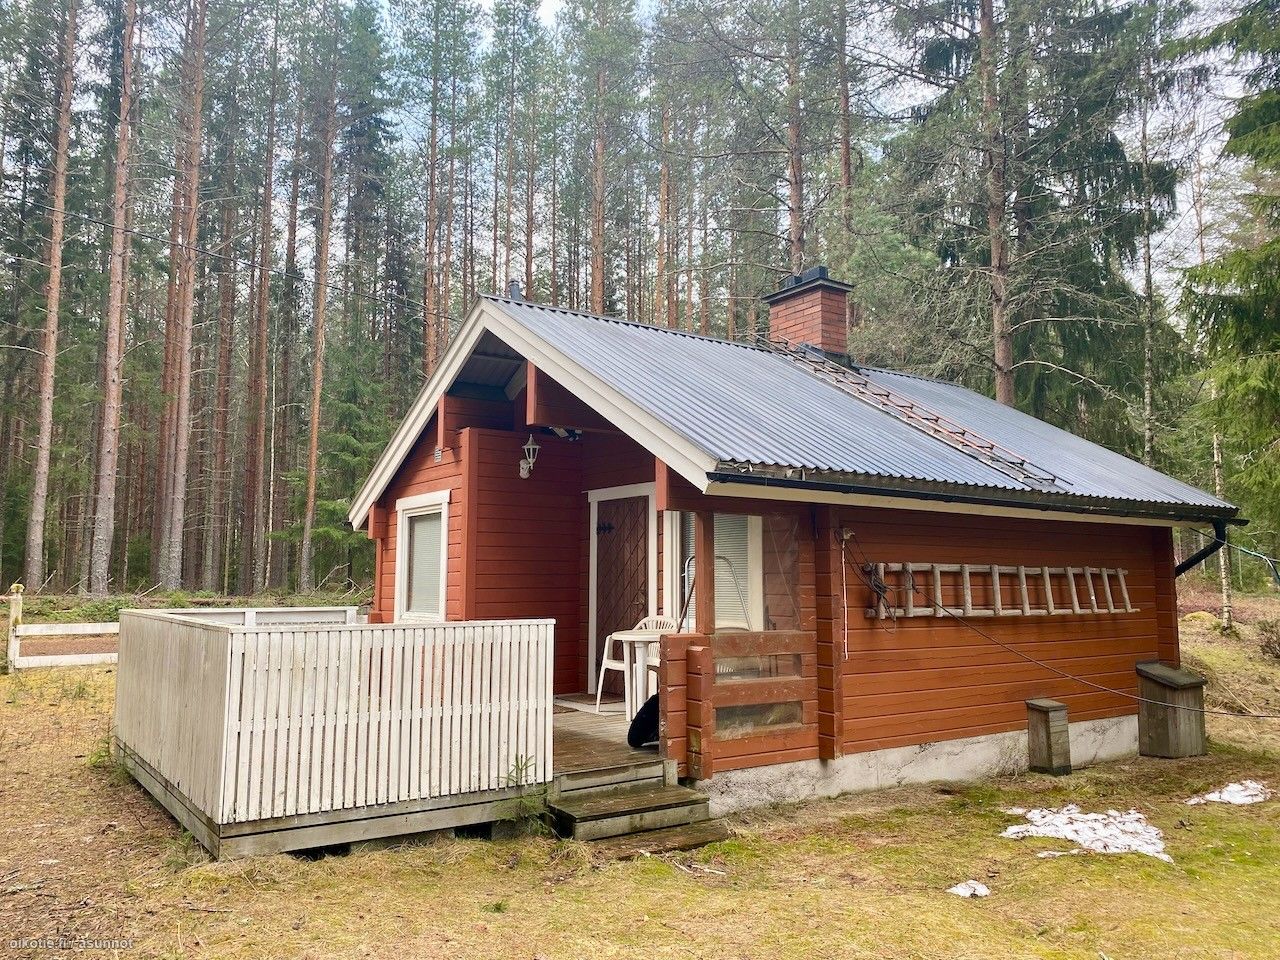 27 m² Käpälämäentie 31, 31170 Forssa Mökissä tupakeittiö, pieni makuuhuone,  pukuh., sauna + terassi. Lisäksi  